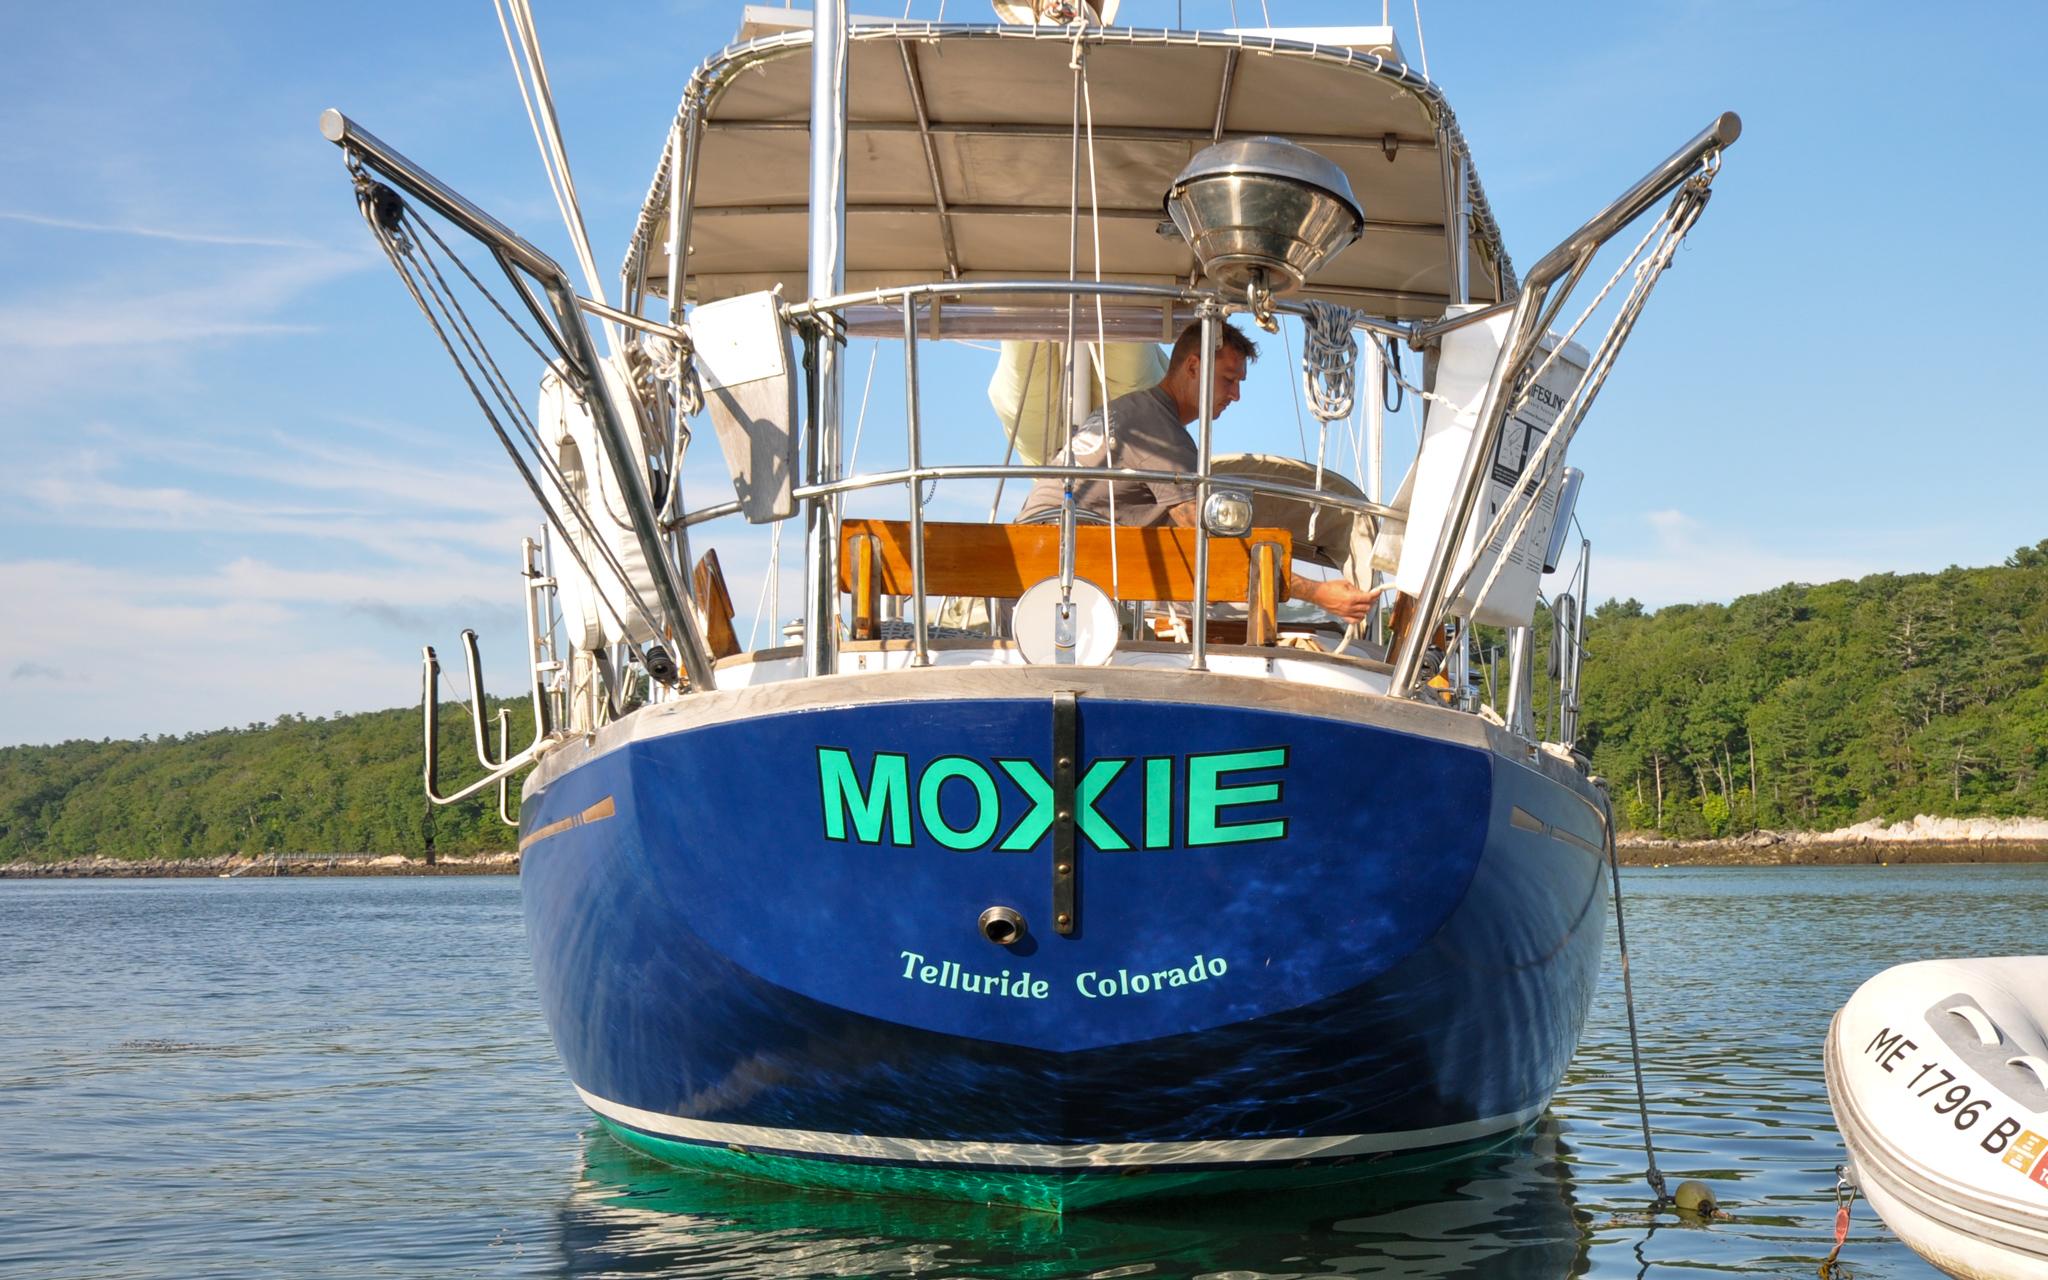 Mason 43 - Moxie - On Mooring